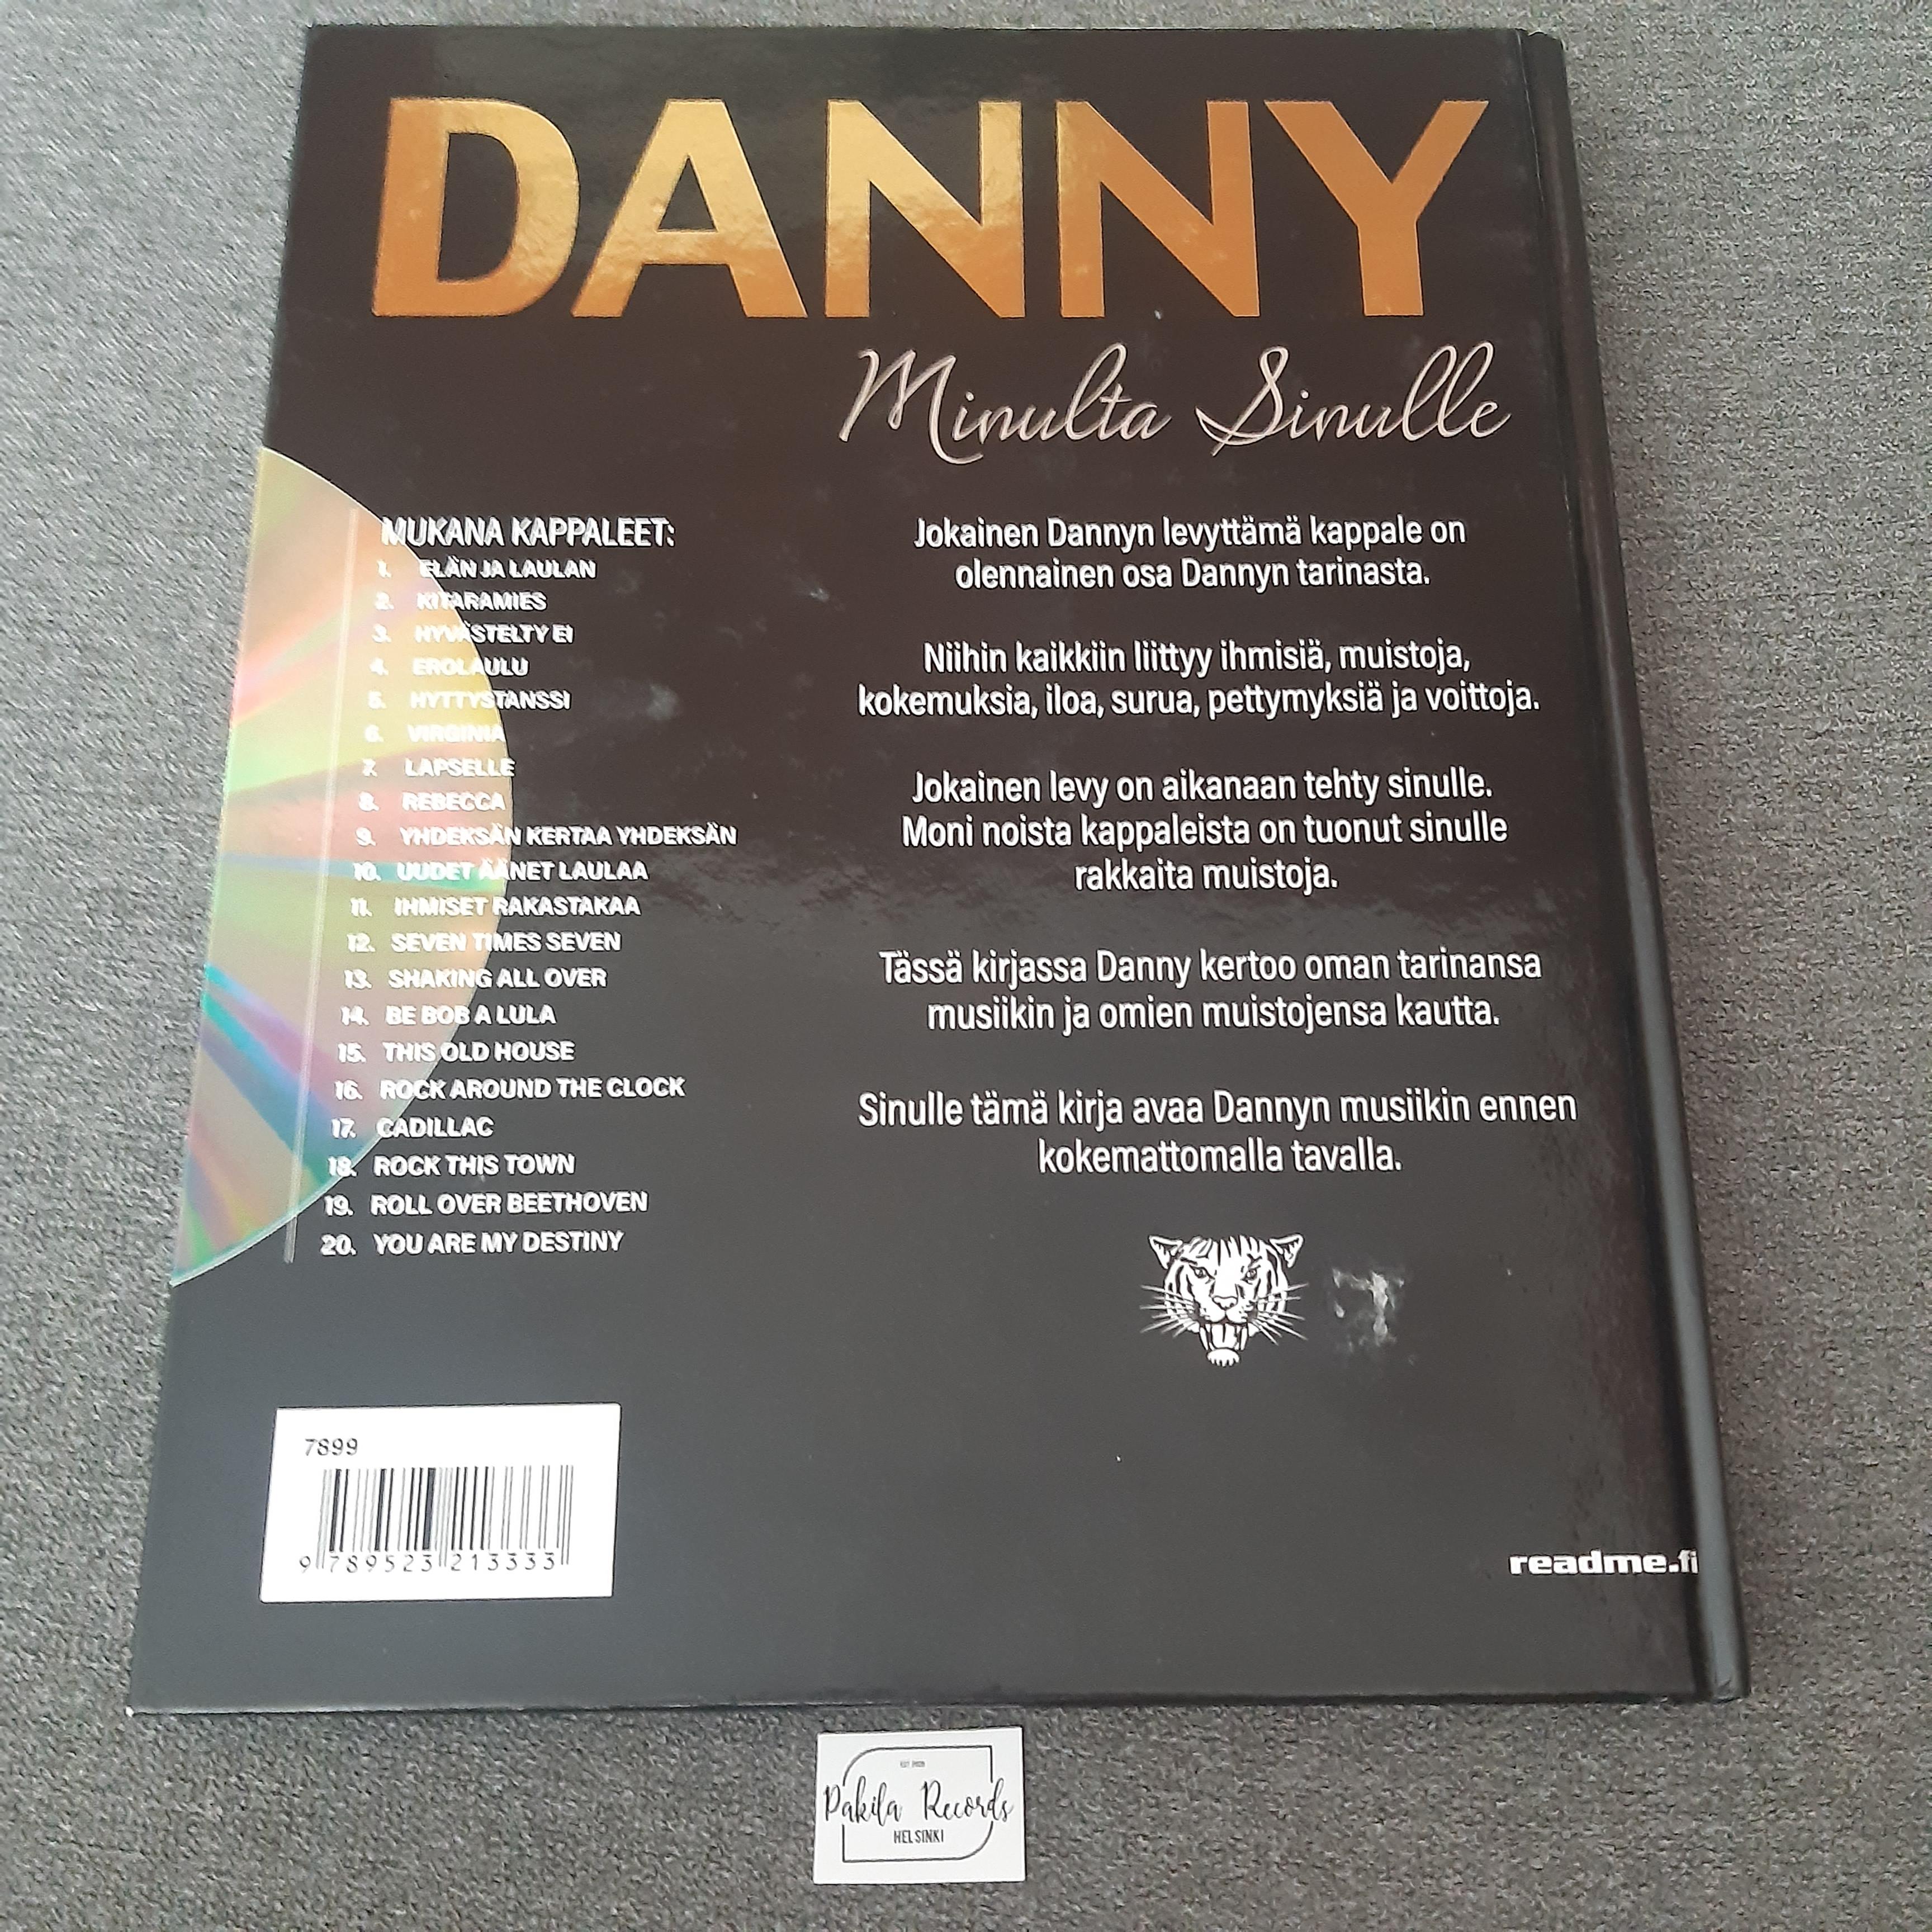 Danny, Minulta sinulle - Markku Veijalainen - Kirja + CD (käytetty)